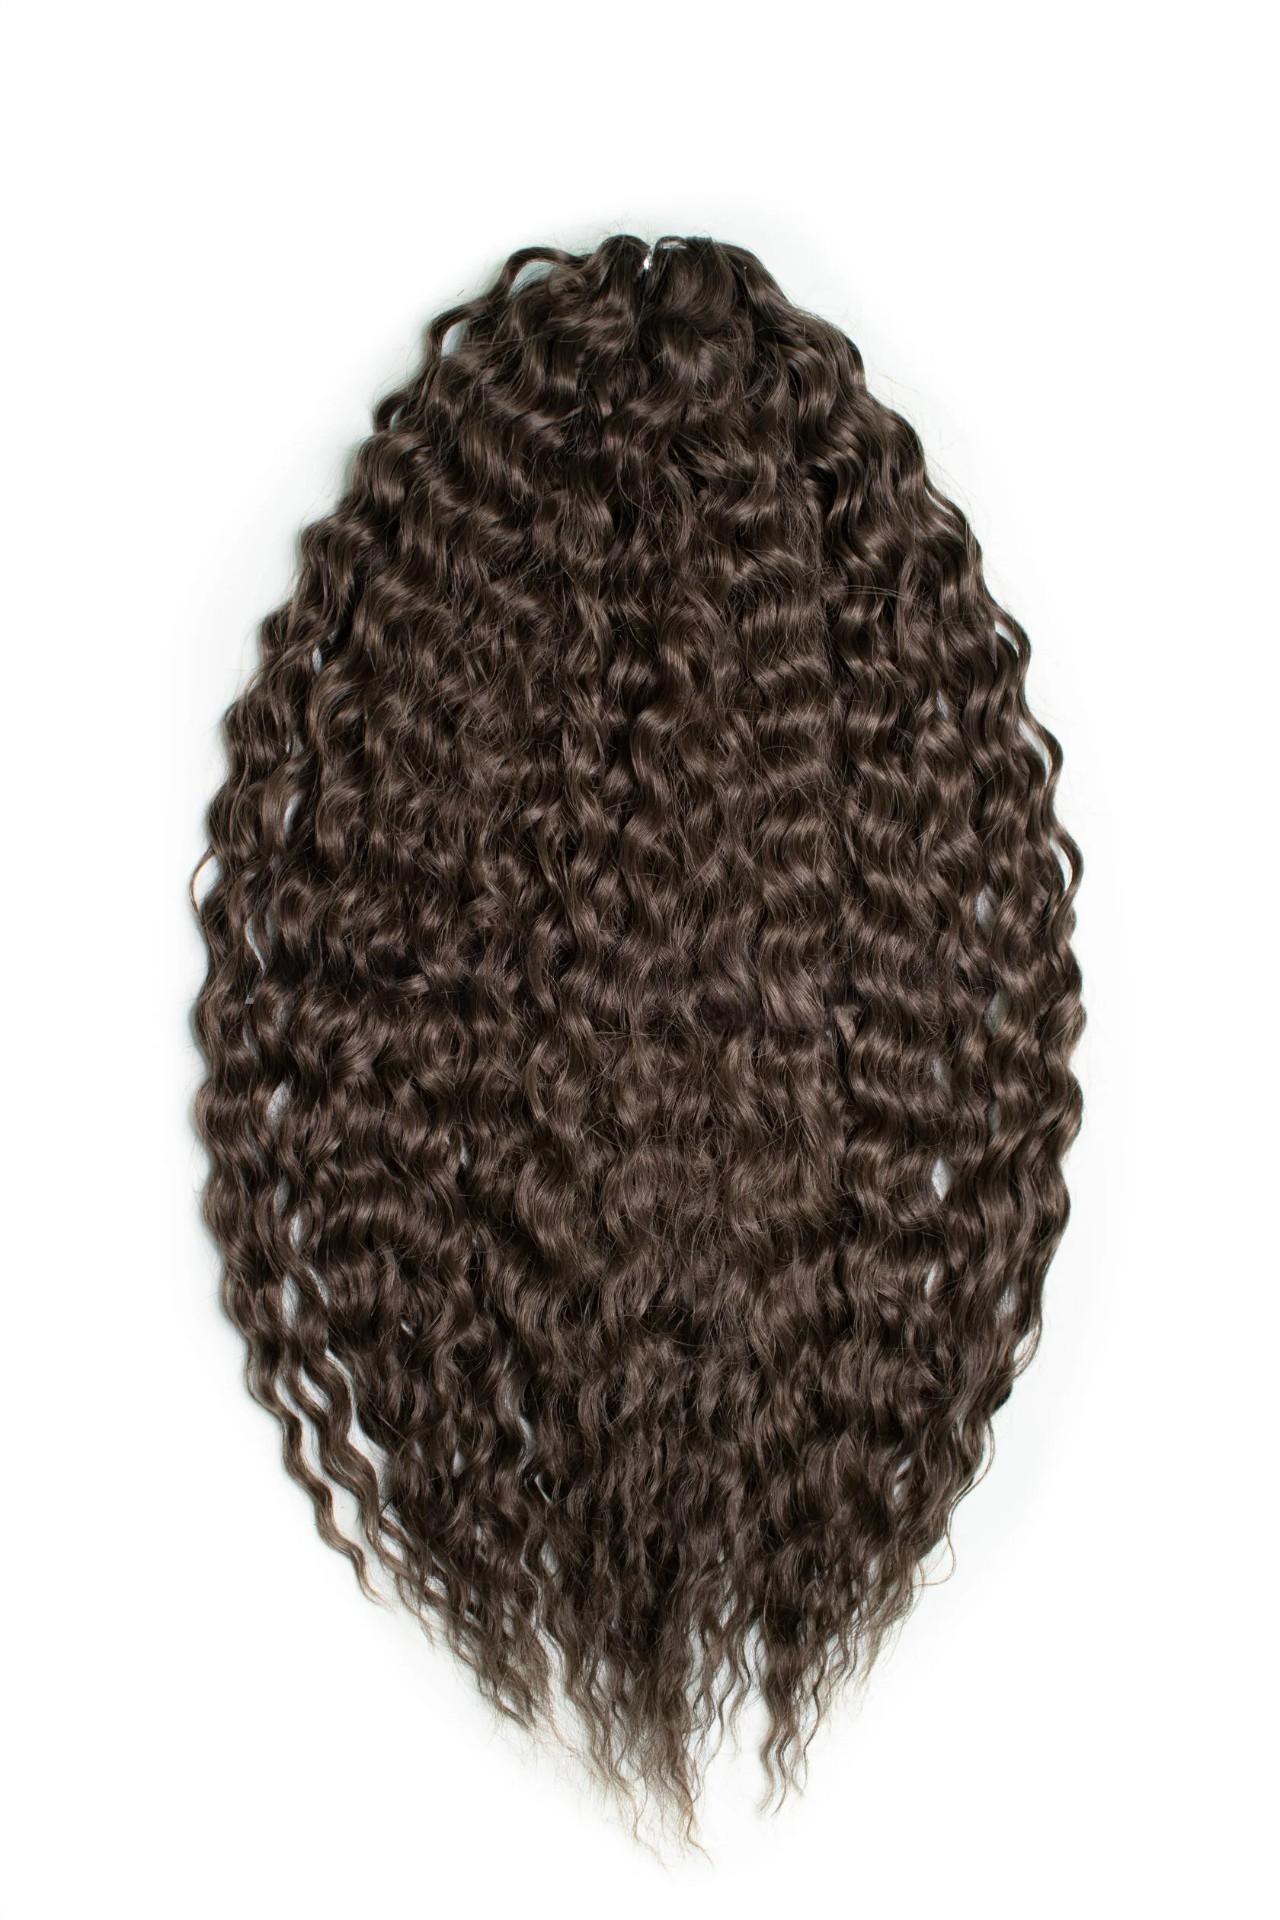 Афрокудри для плетения волос Ariel цвет 12 темно-русый 55см вес 300г sim braids афрокосы 60 см 18 прядей ce русый розовый fr 11